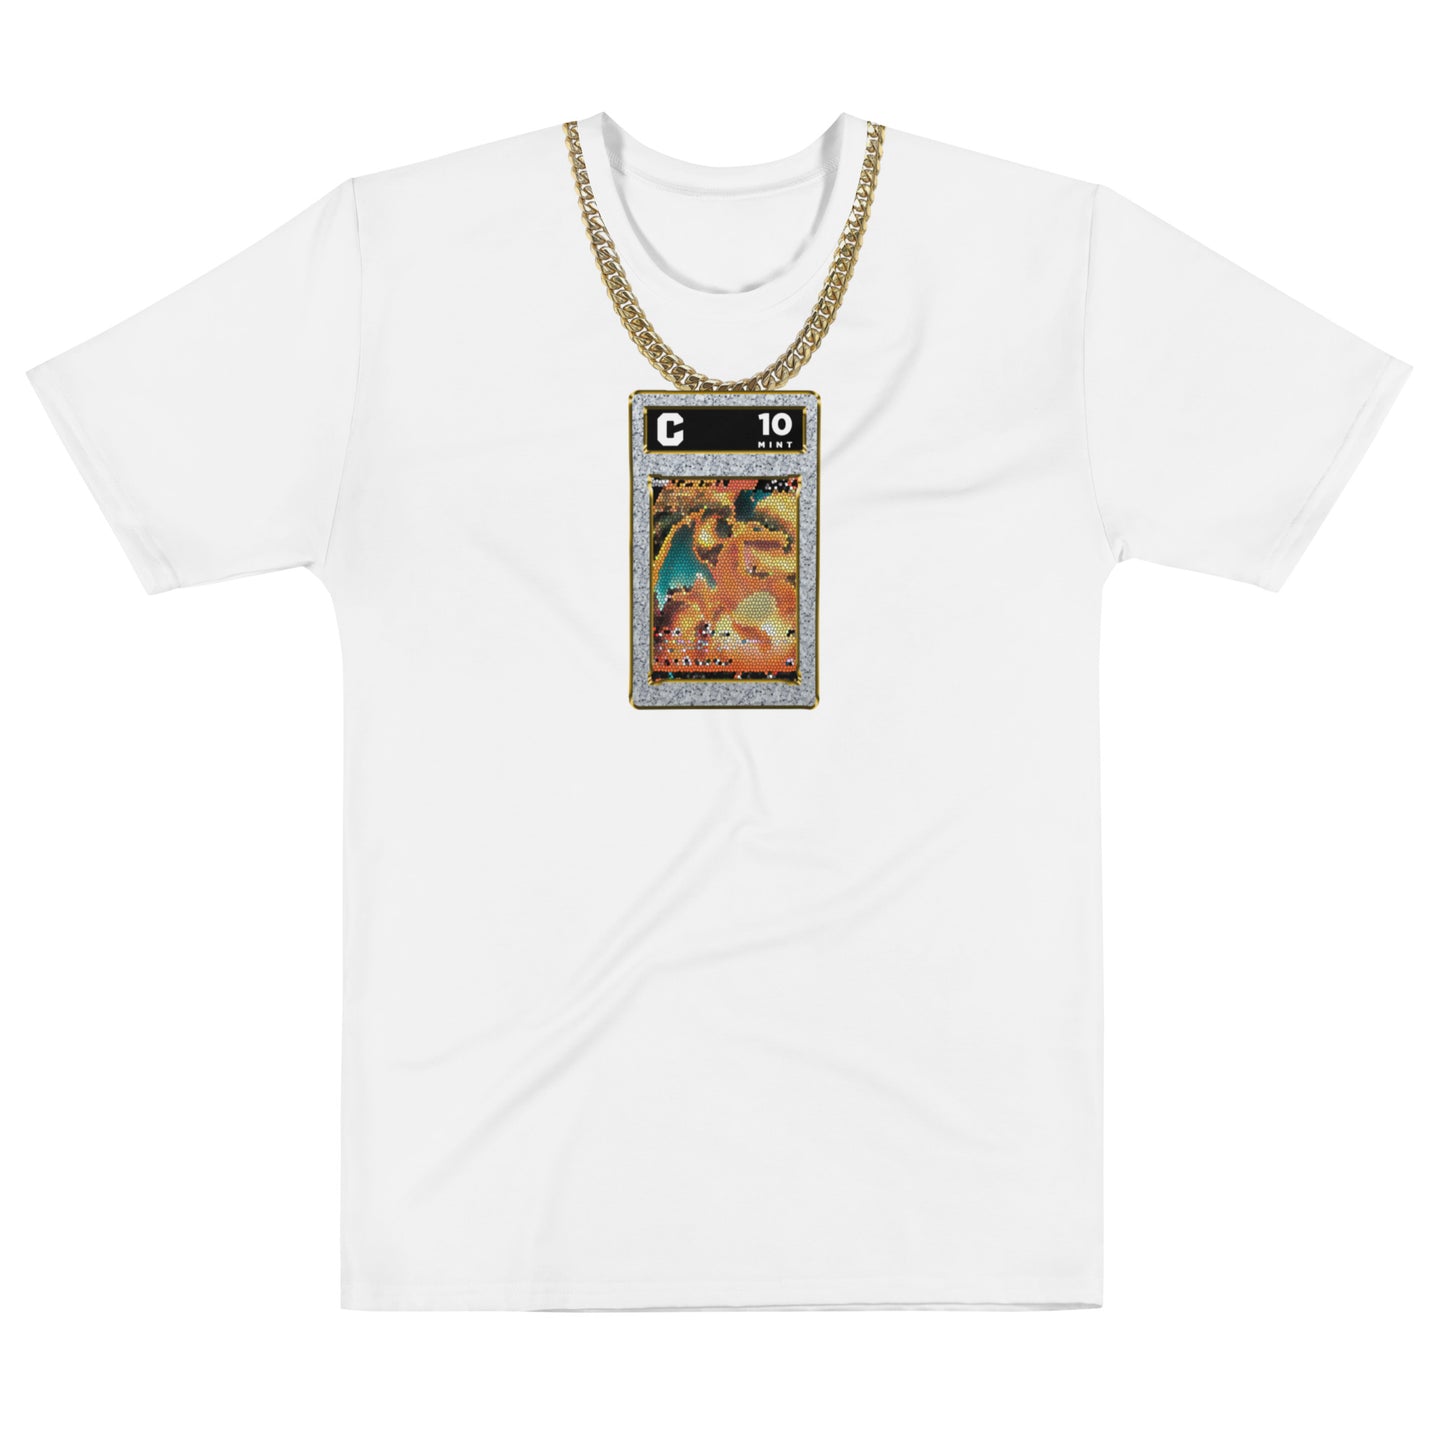 Card Chain T-shirt